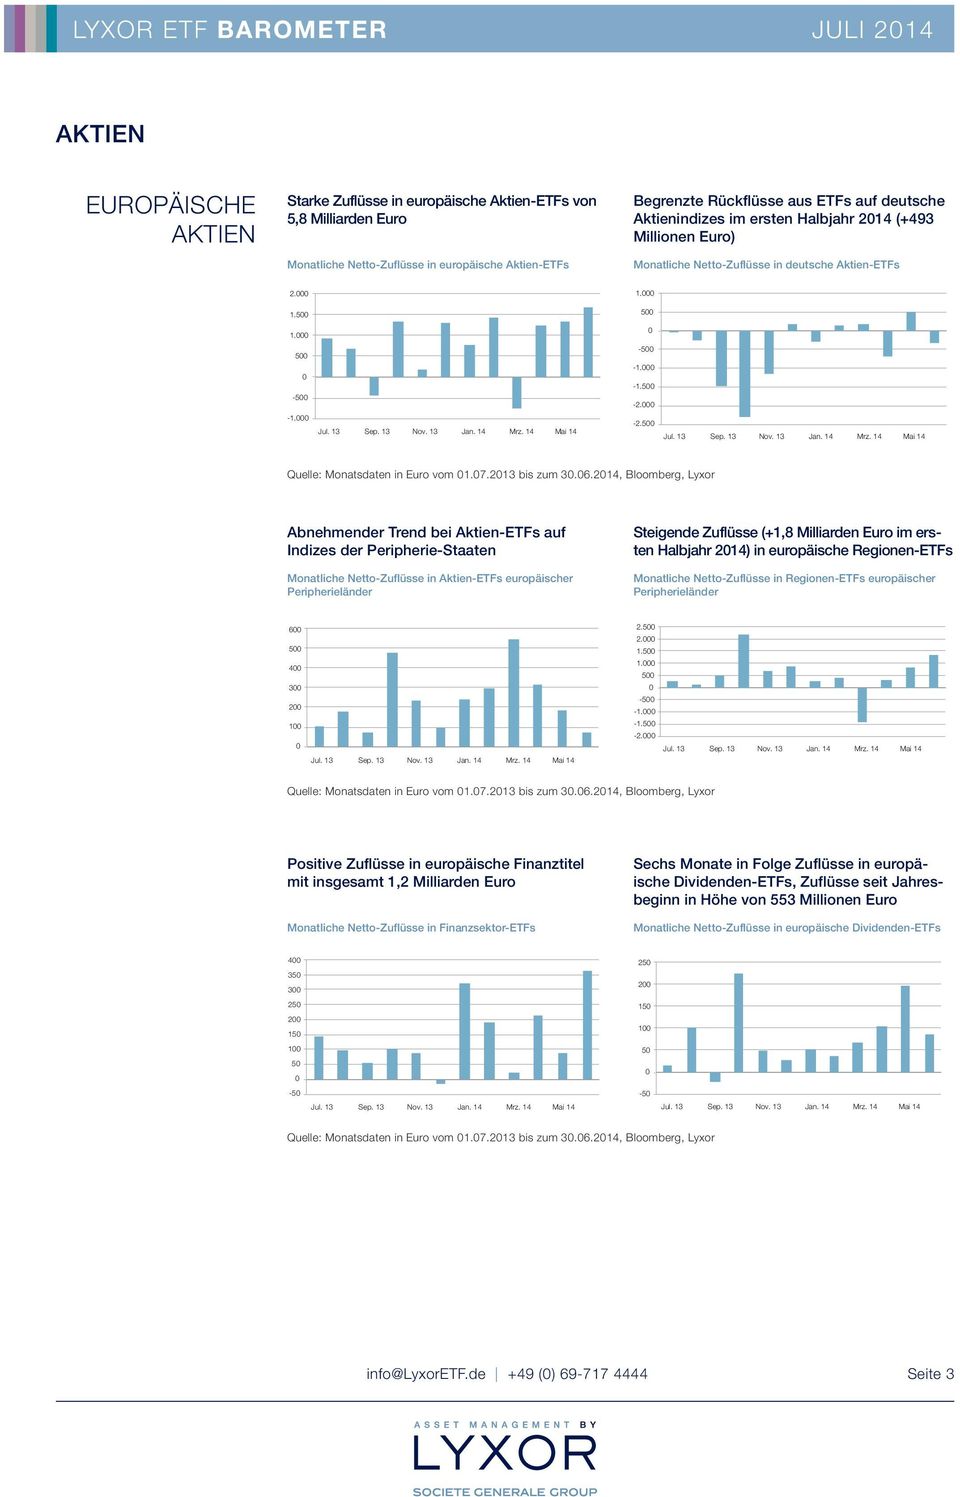 214, Bloomberg, Lyxor Abnehmender Trend bei Aktien-ETFs auf Indizes der Peripherie-Staaten Monatliche Netto-Zuflüsse in Aktien-ETFs europäischer Peripherieländer Steigende Zuflüsse (+1,8 Milliarden